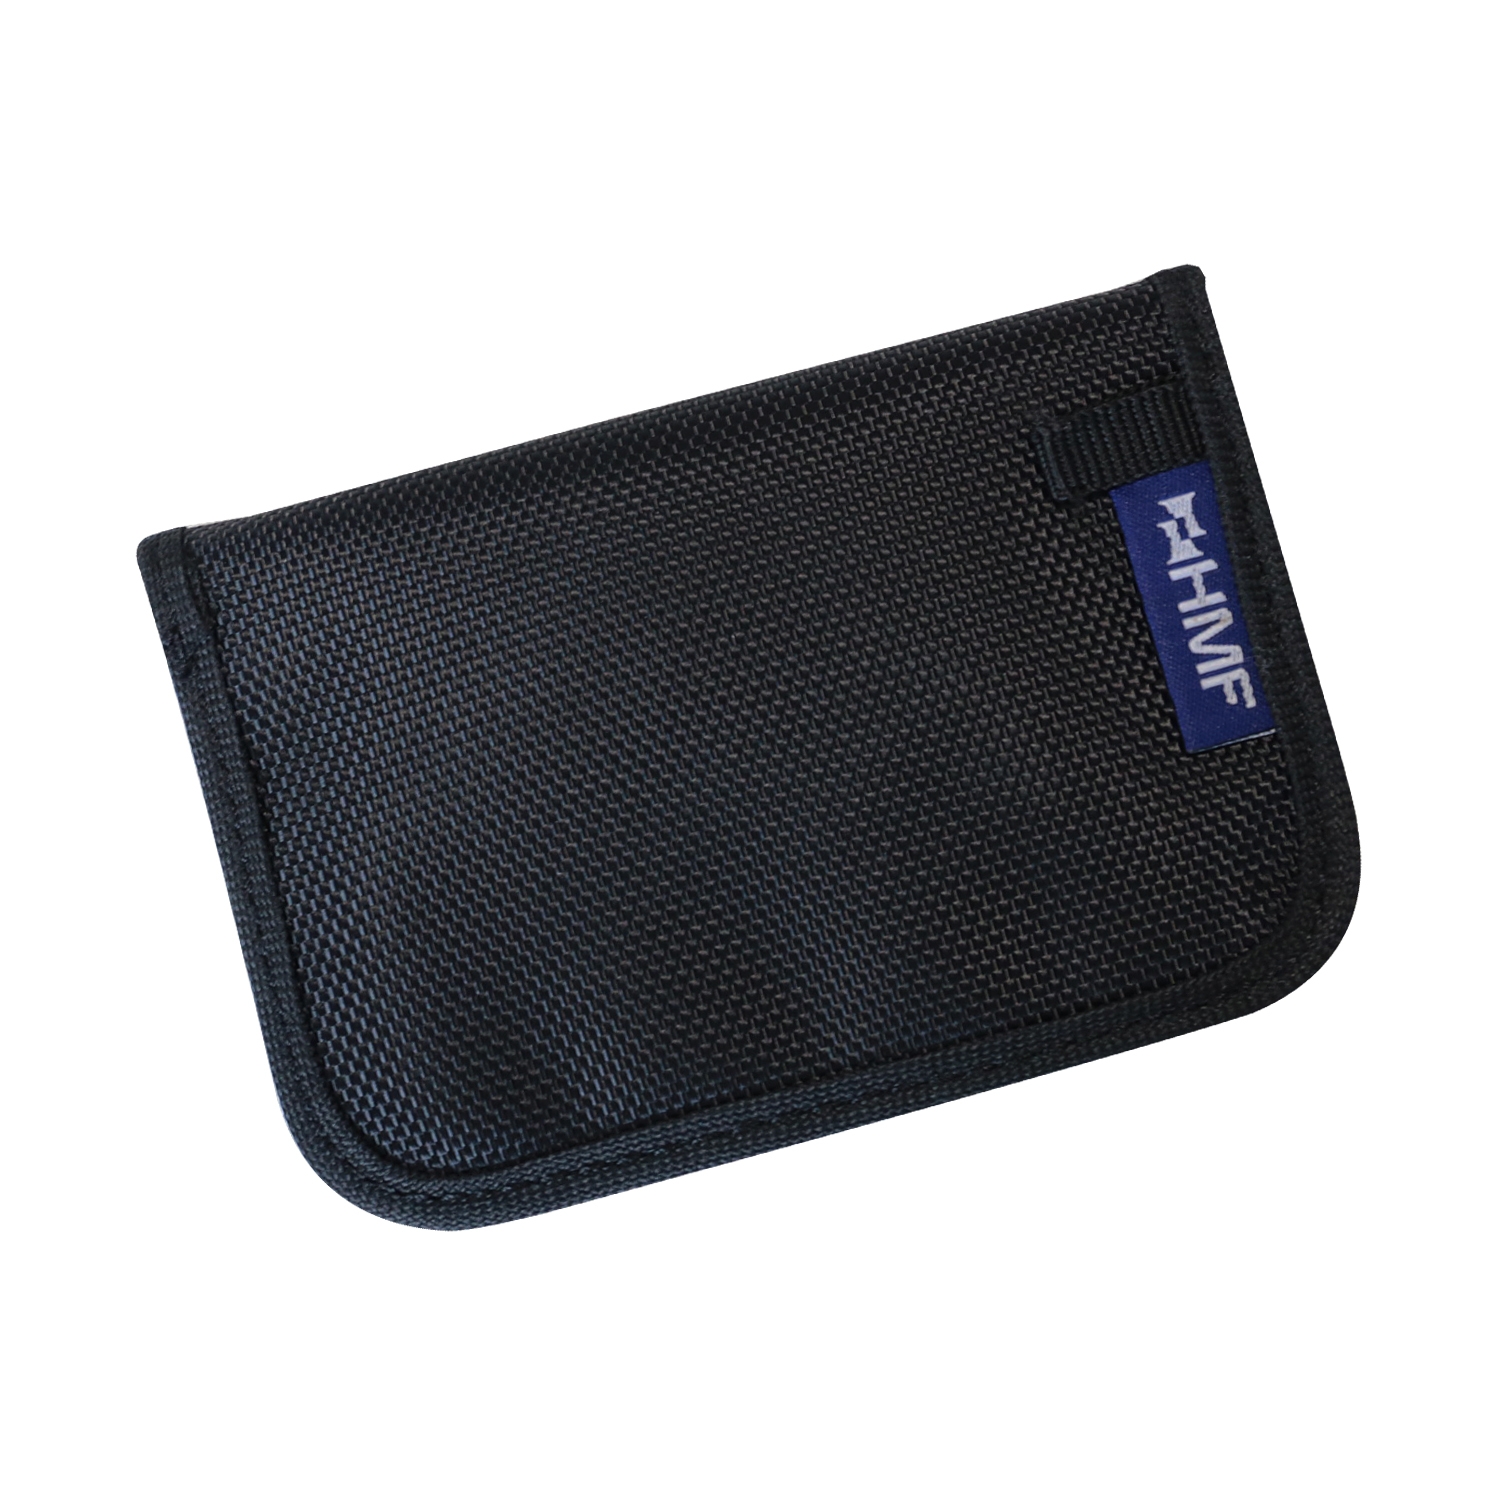 RFID Schutztasche für Autoschlüssel zur Abschirmung von Keyless-Go von HMF mit den Maßen 8.5 x 13 x 1.2 cm